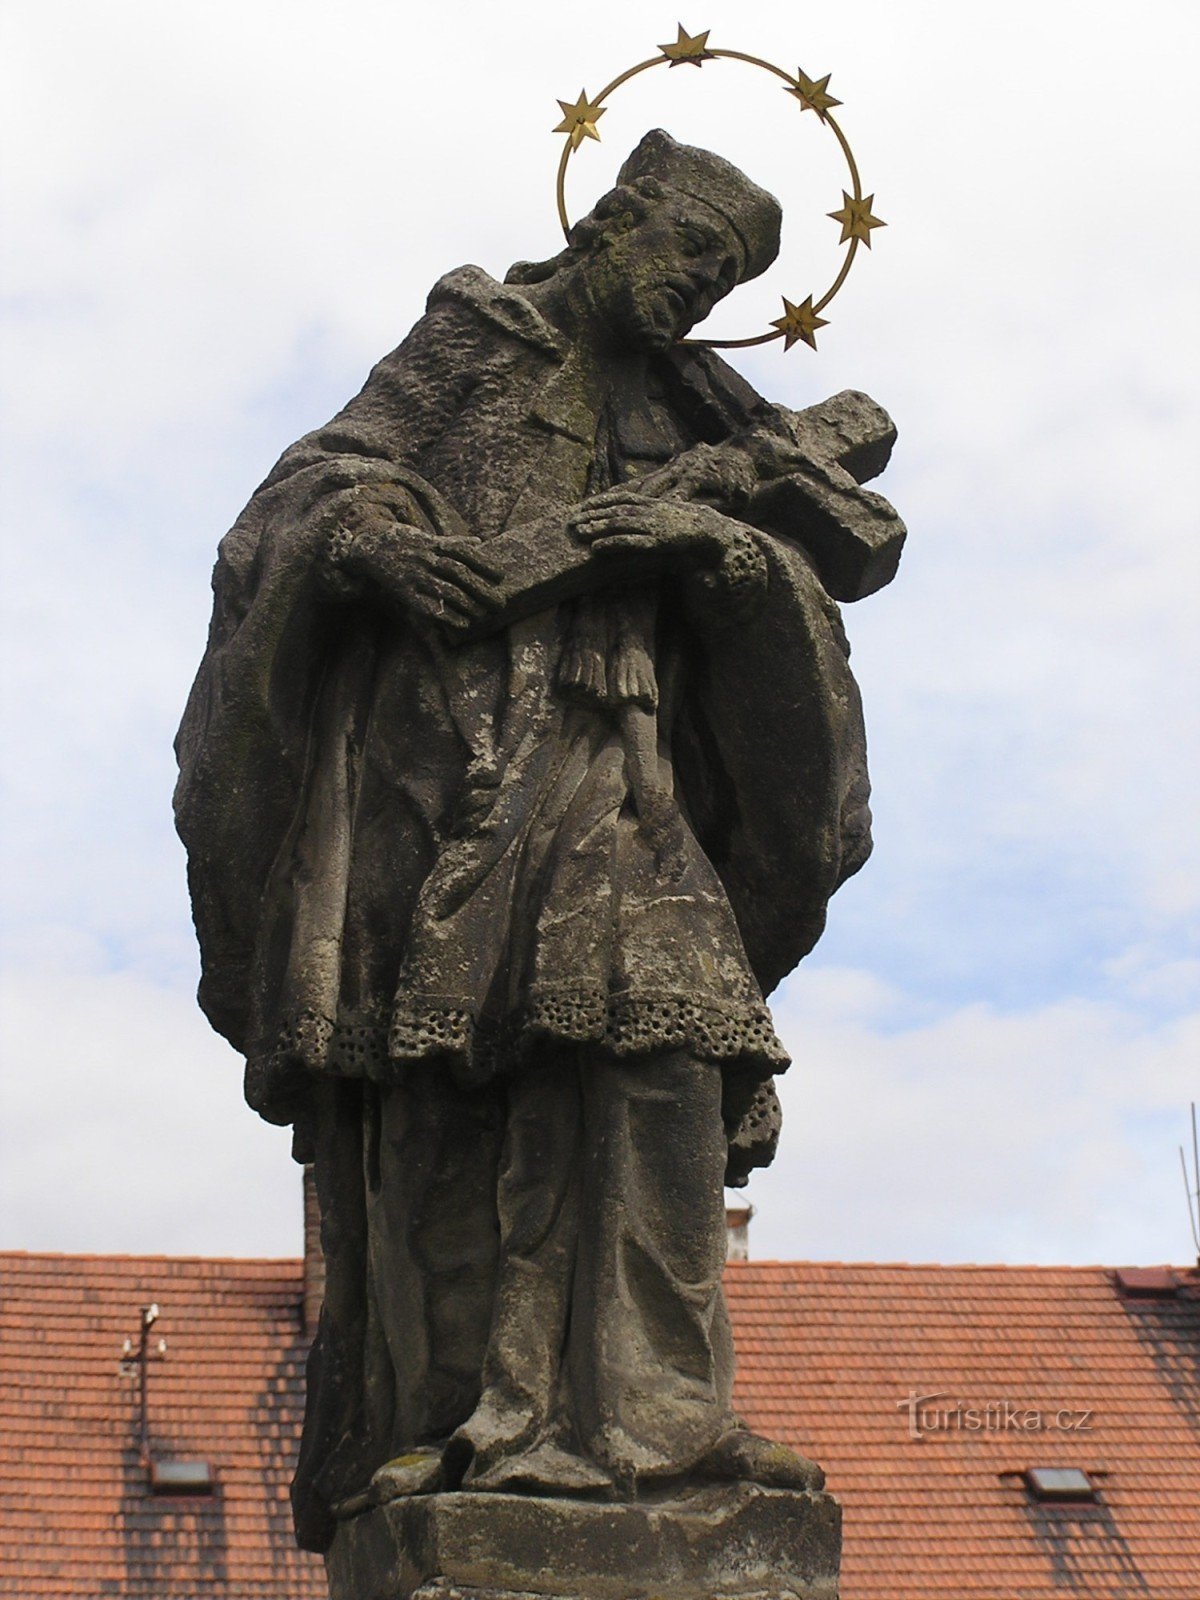 St. João de Nepomuk